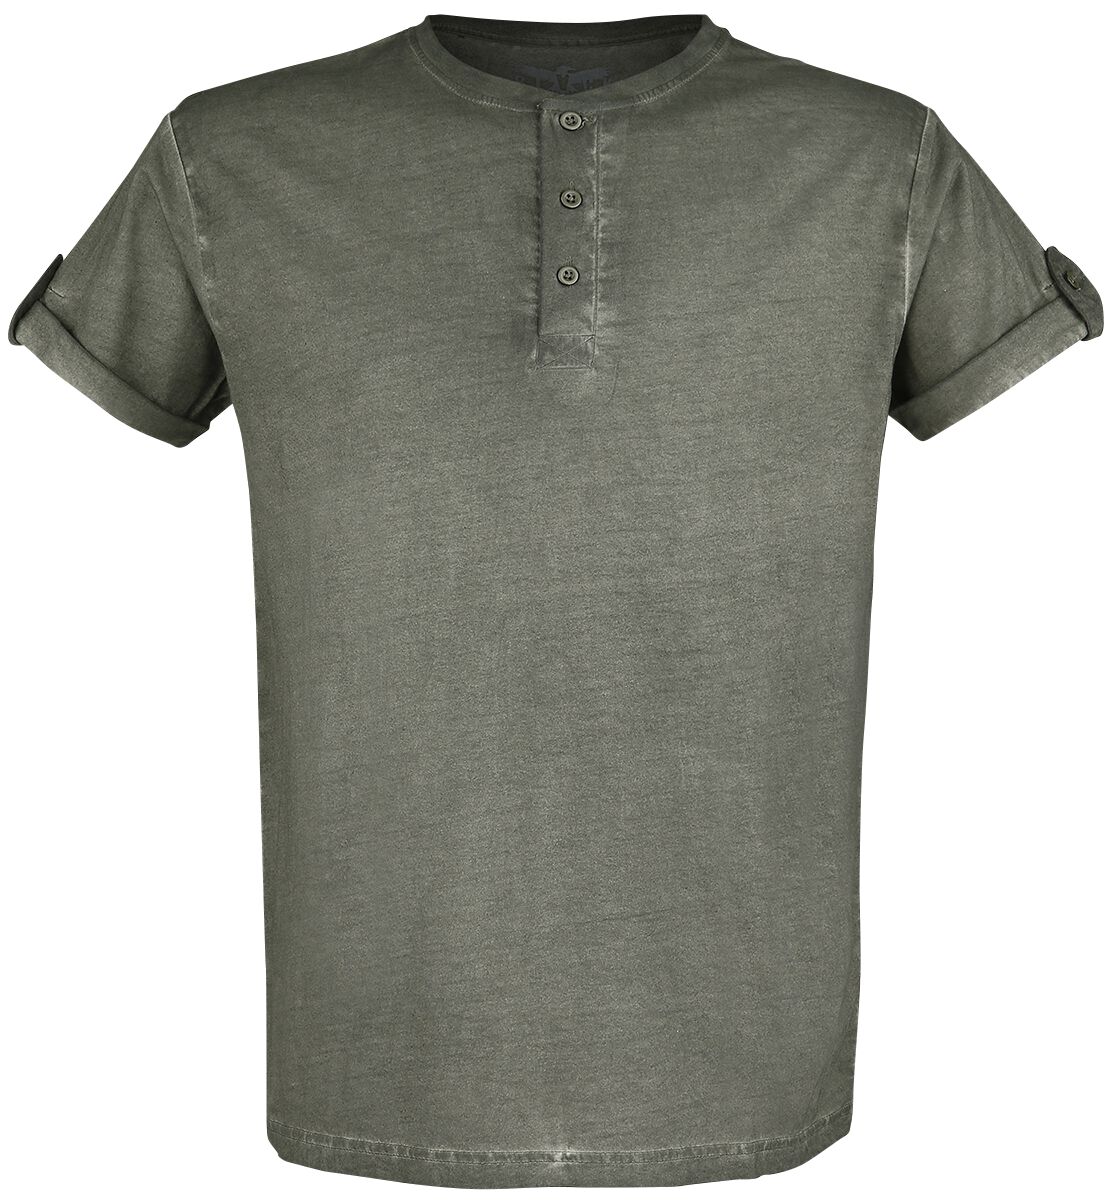 Black Premium by EMP T-Shirt - grünes T-Shirt mit Knopfleiste und umgeschlagenen Ärmeln - S bis 5XL - für Männer - Größe 4XL - grün